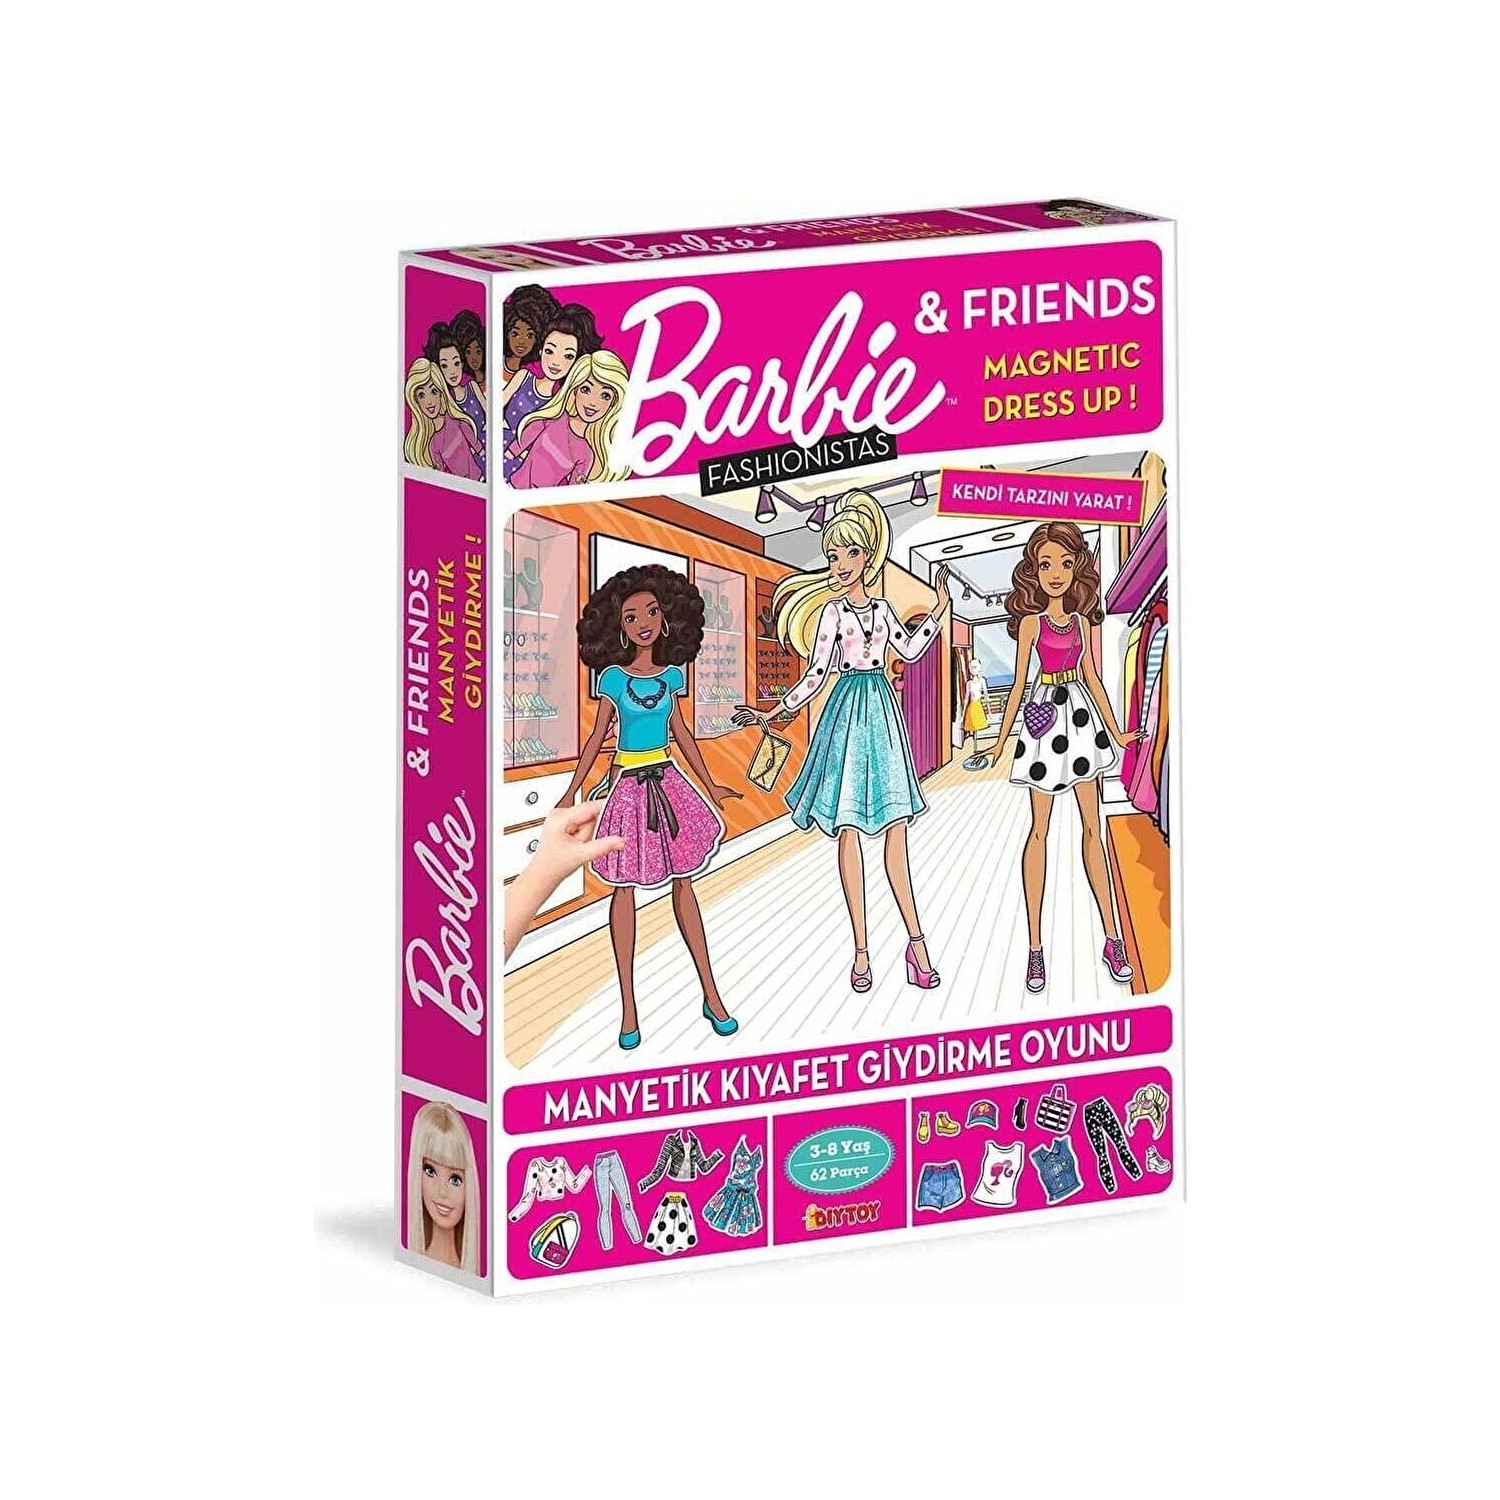 Магнитная игра одевалка Barbie Fashionistas развивающая магнитная игра одевалка 3 5860305